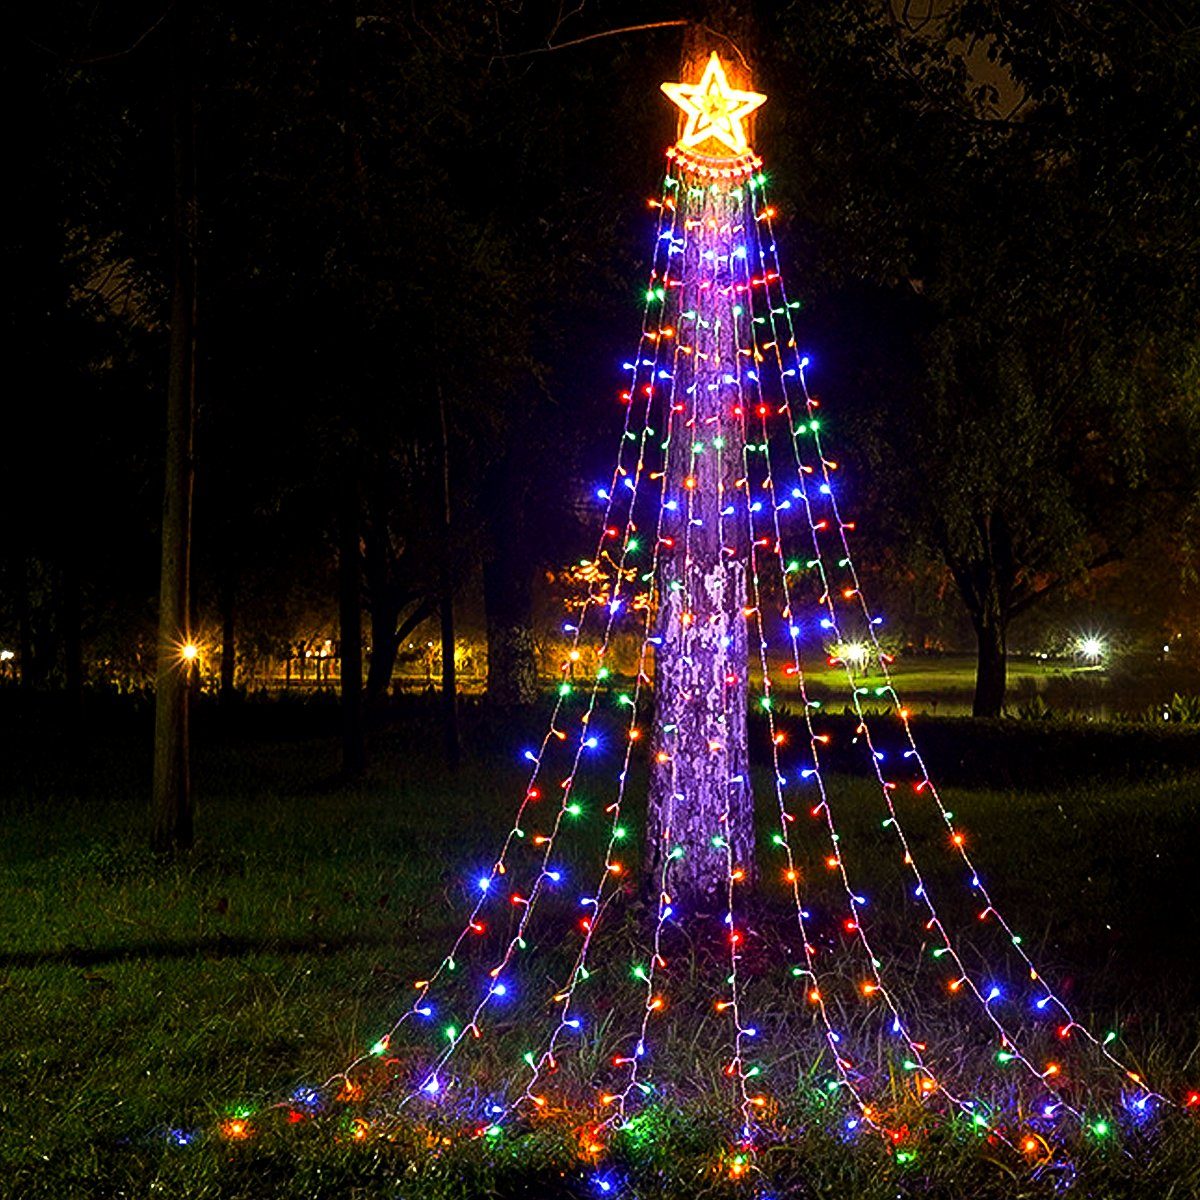 ein Stern, Wasserfall Fee LED-Lichterkette LETGOSPT Weihnachts Lichterkette Modi,230V, großer bunt 350 Dekoration Lichter mit Wasserfall LEDs IP44 8